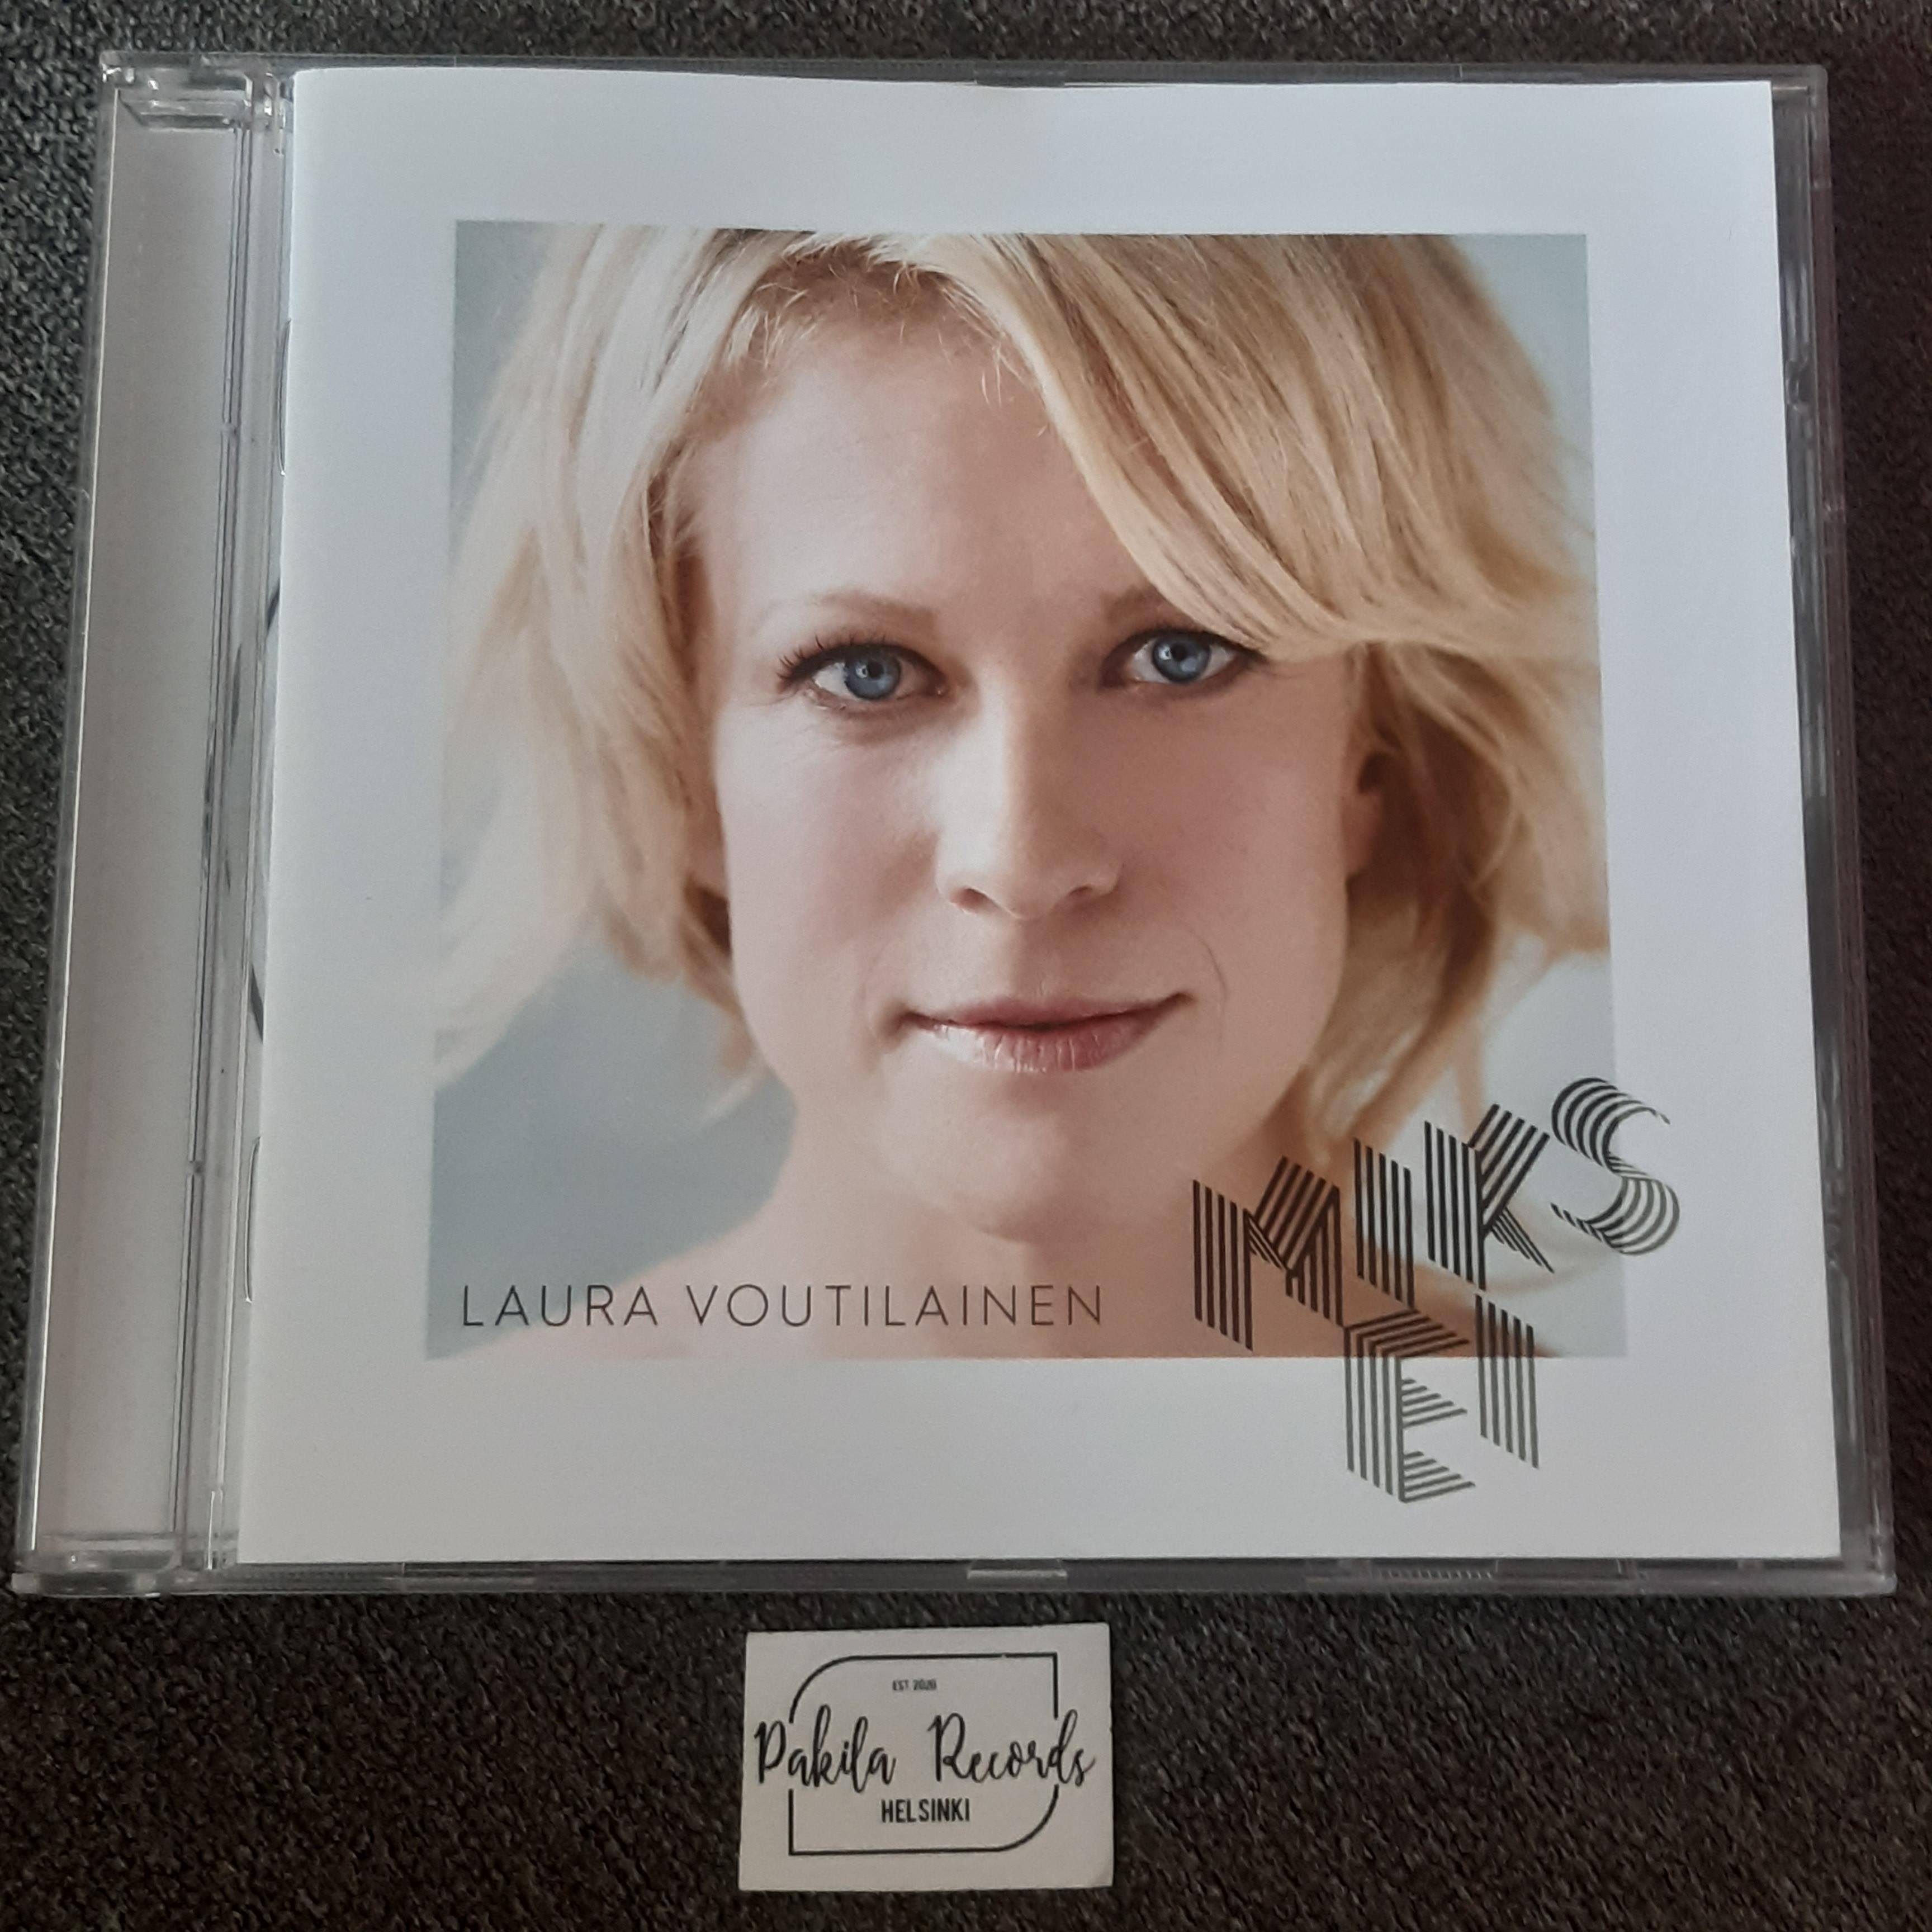 Laura Voutilainen - Miks ei - CD (käytetty)